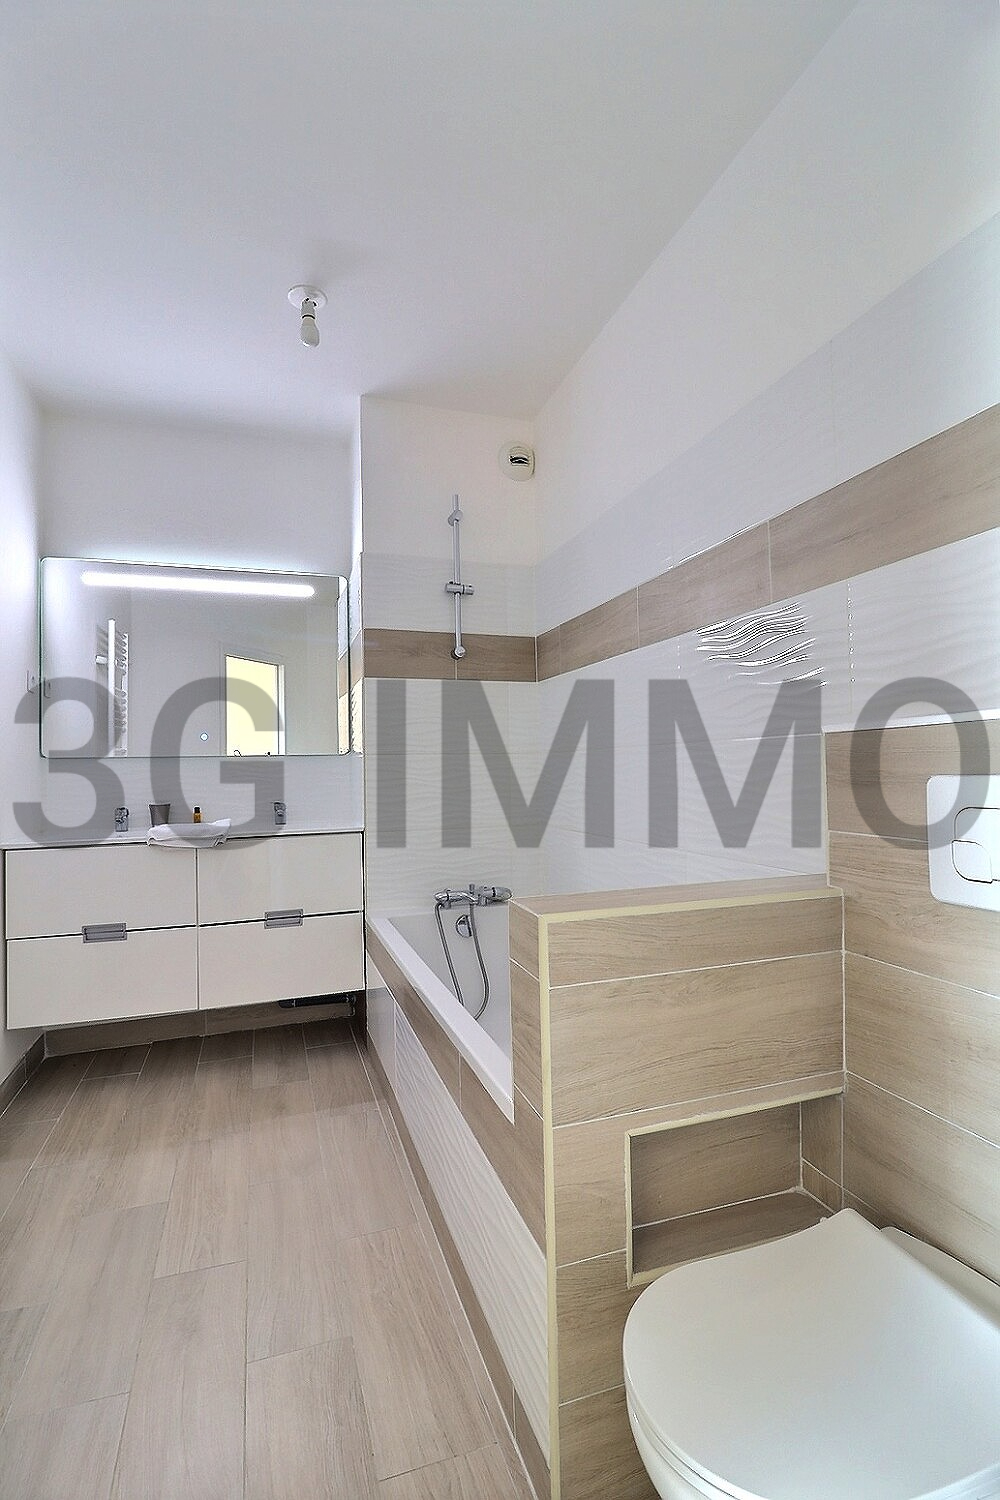 Photo mobile 10 | Deauville (14800) | Appartement de 56.06 m² | Type 3 | 374800 € |  Référence: 187355PG